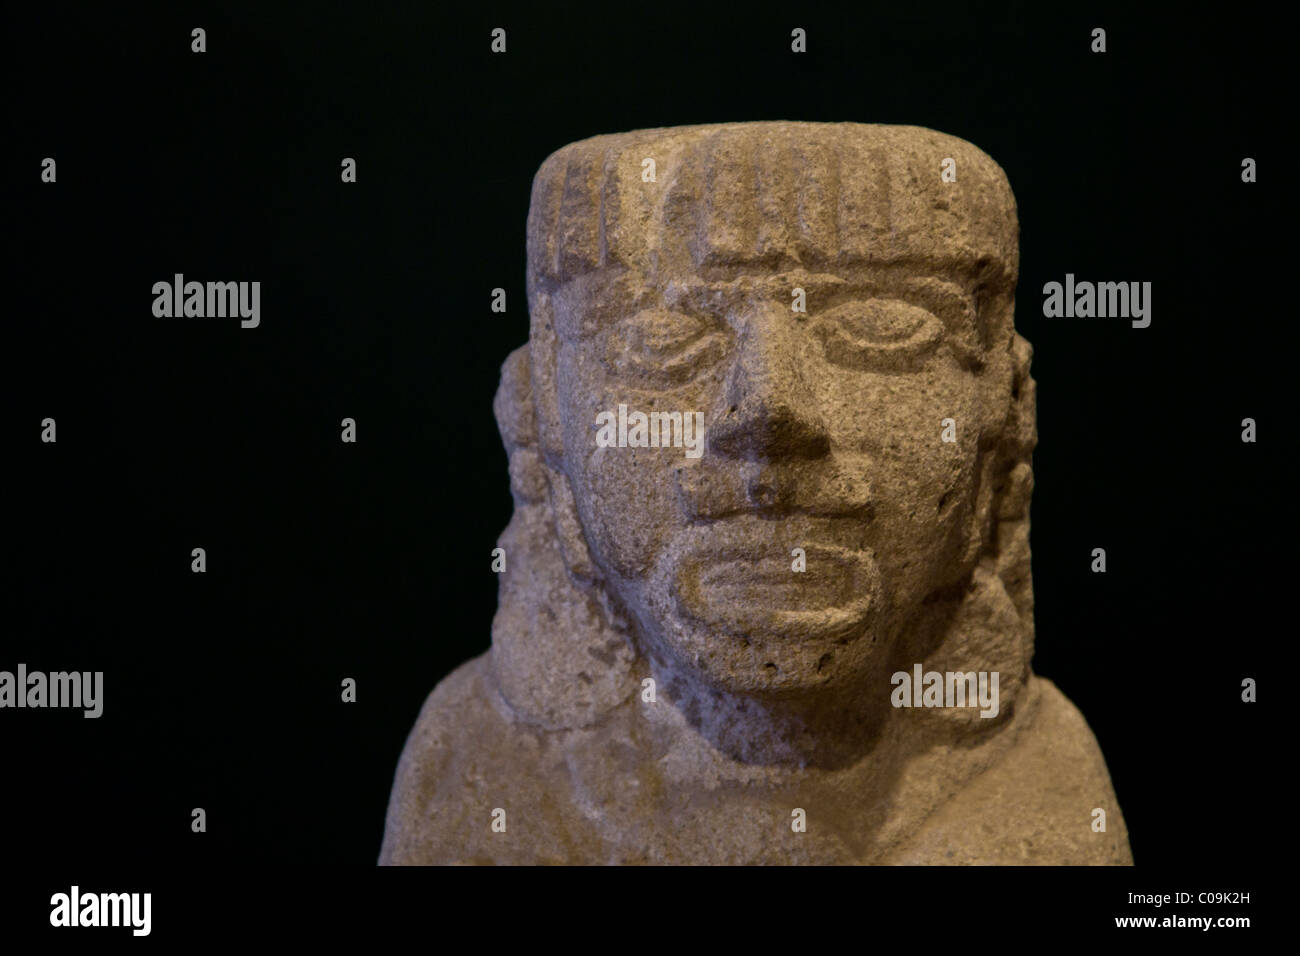 Steinbildhauerei von einem Toltec Indianer gefunden in der alten Hauptstadt der Tolteken Tula oder Tollan in Zentralmexiko. Stockfoto